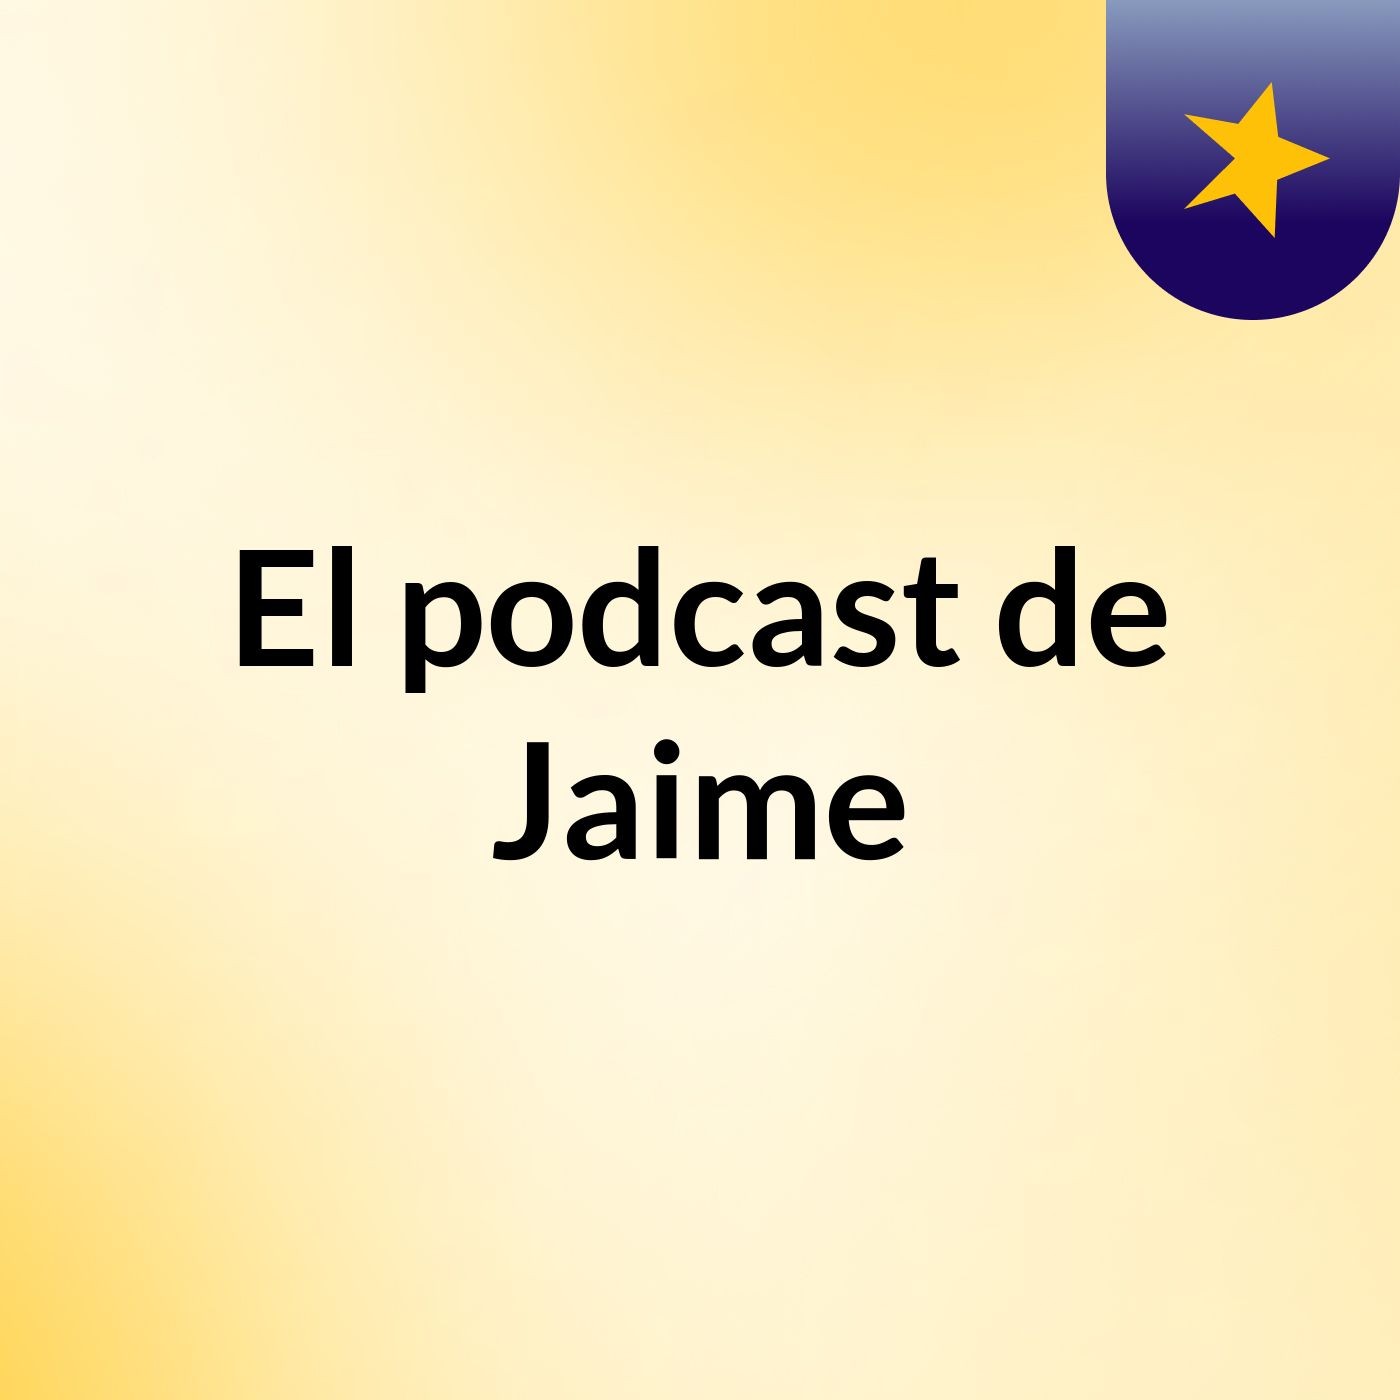 El podcast de Jaime